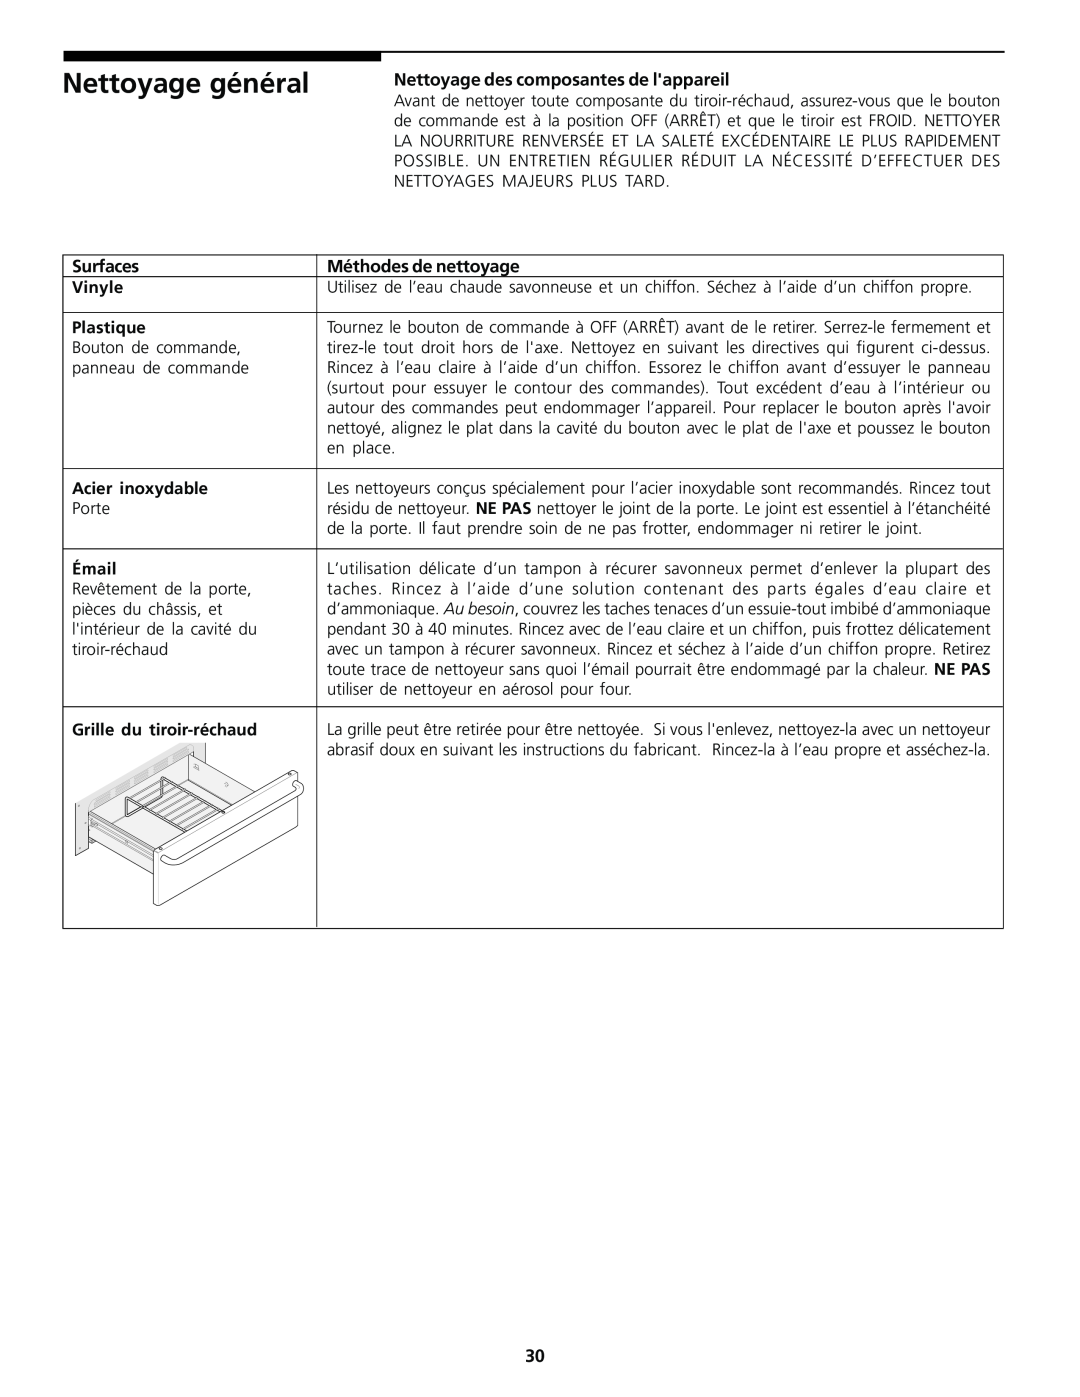 Frigidaire Warm & Serve Drawer Nettoyage général, Nettoyage des composantes de lappareil, Méthodes de nettoyage, Vinyle 